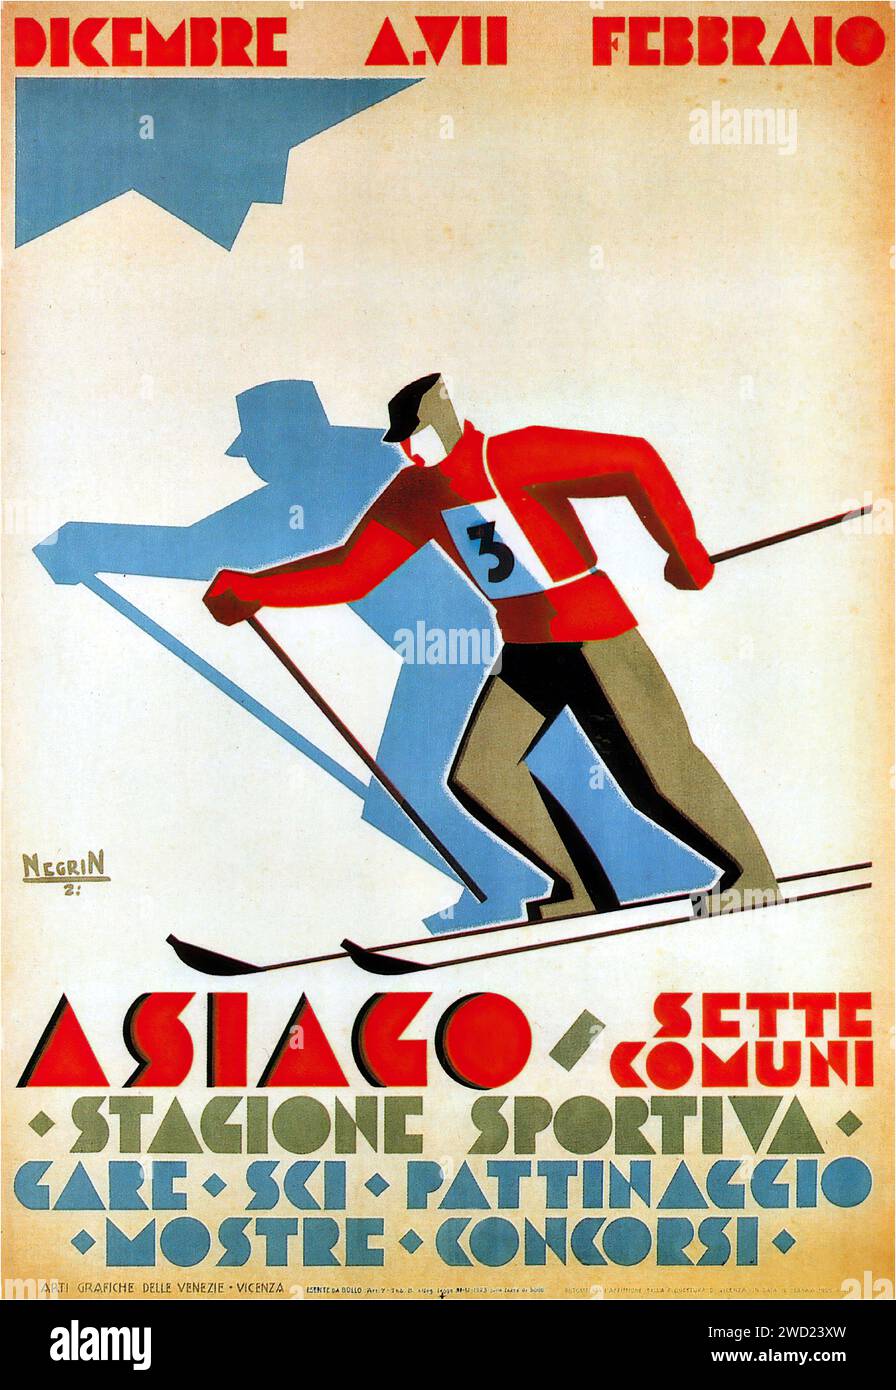 'DICEMBRE A.XVII FEBBRAIO' 'ASIAGO · SETTE COMUNI' 'STAZIONE SPORTIVA: GARE · sci · PATTINAGGIO · MOSTRE · CONCORSI' 'Negrin' 'dicembre anno 17 febbraio' 'Asiago · sette comuni' 'stagione sportiva: competizioni · Sci · pattinaggio · mostre · concorsi 'Negrin' Un poster di sport invernali del 1929 di Gino Caregraro Negrin, con uno sciatore in movimento. Lo stile è caratteristico della fine degli anni '1920 con colori audaci e forme geometriche che enfatizzano la natura dinamica dello sci. Foto Stock